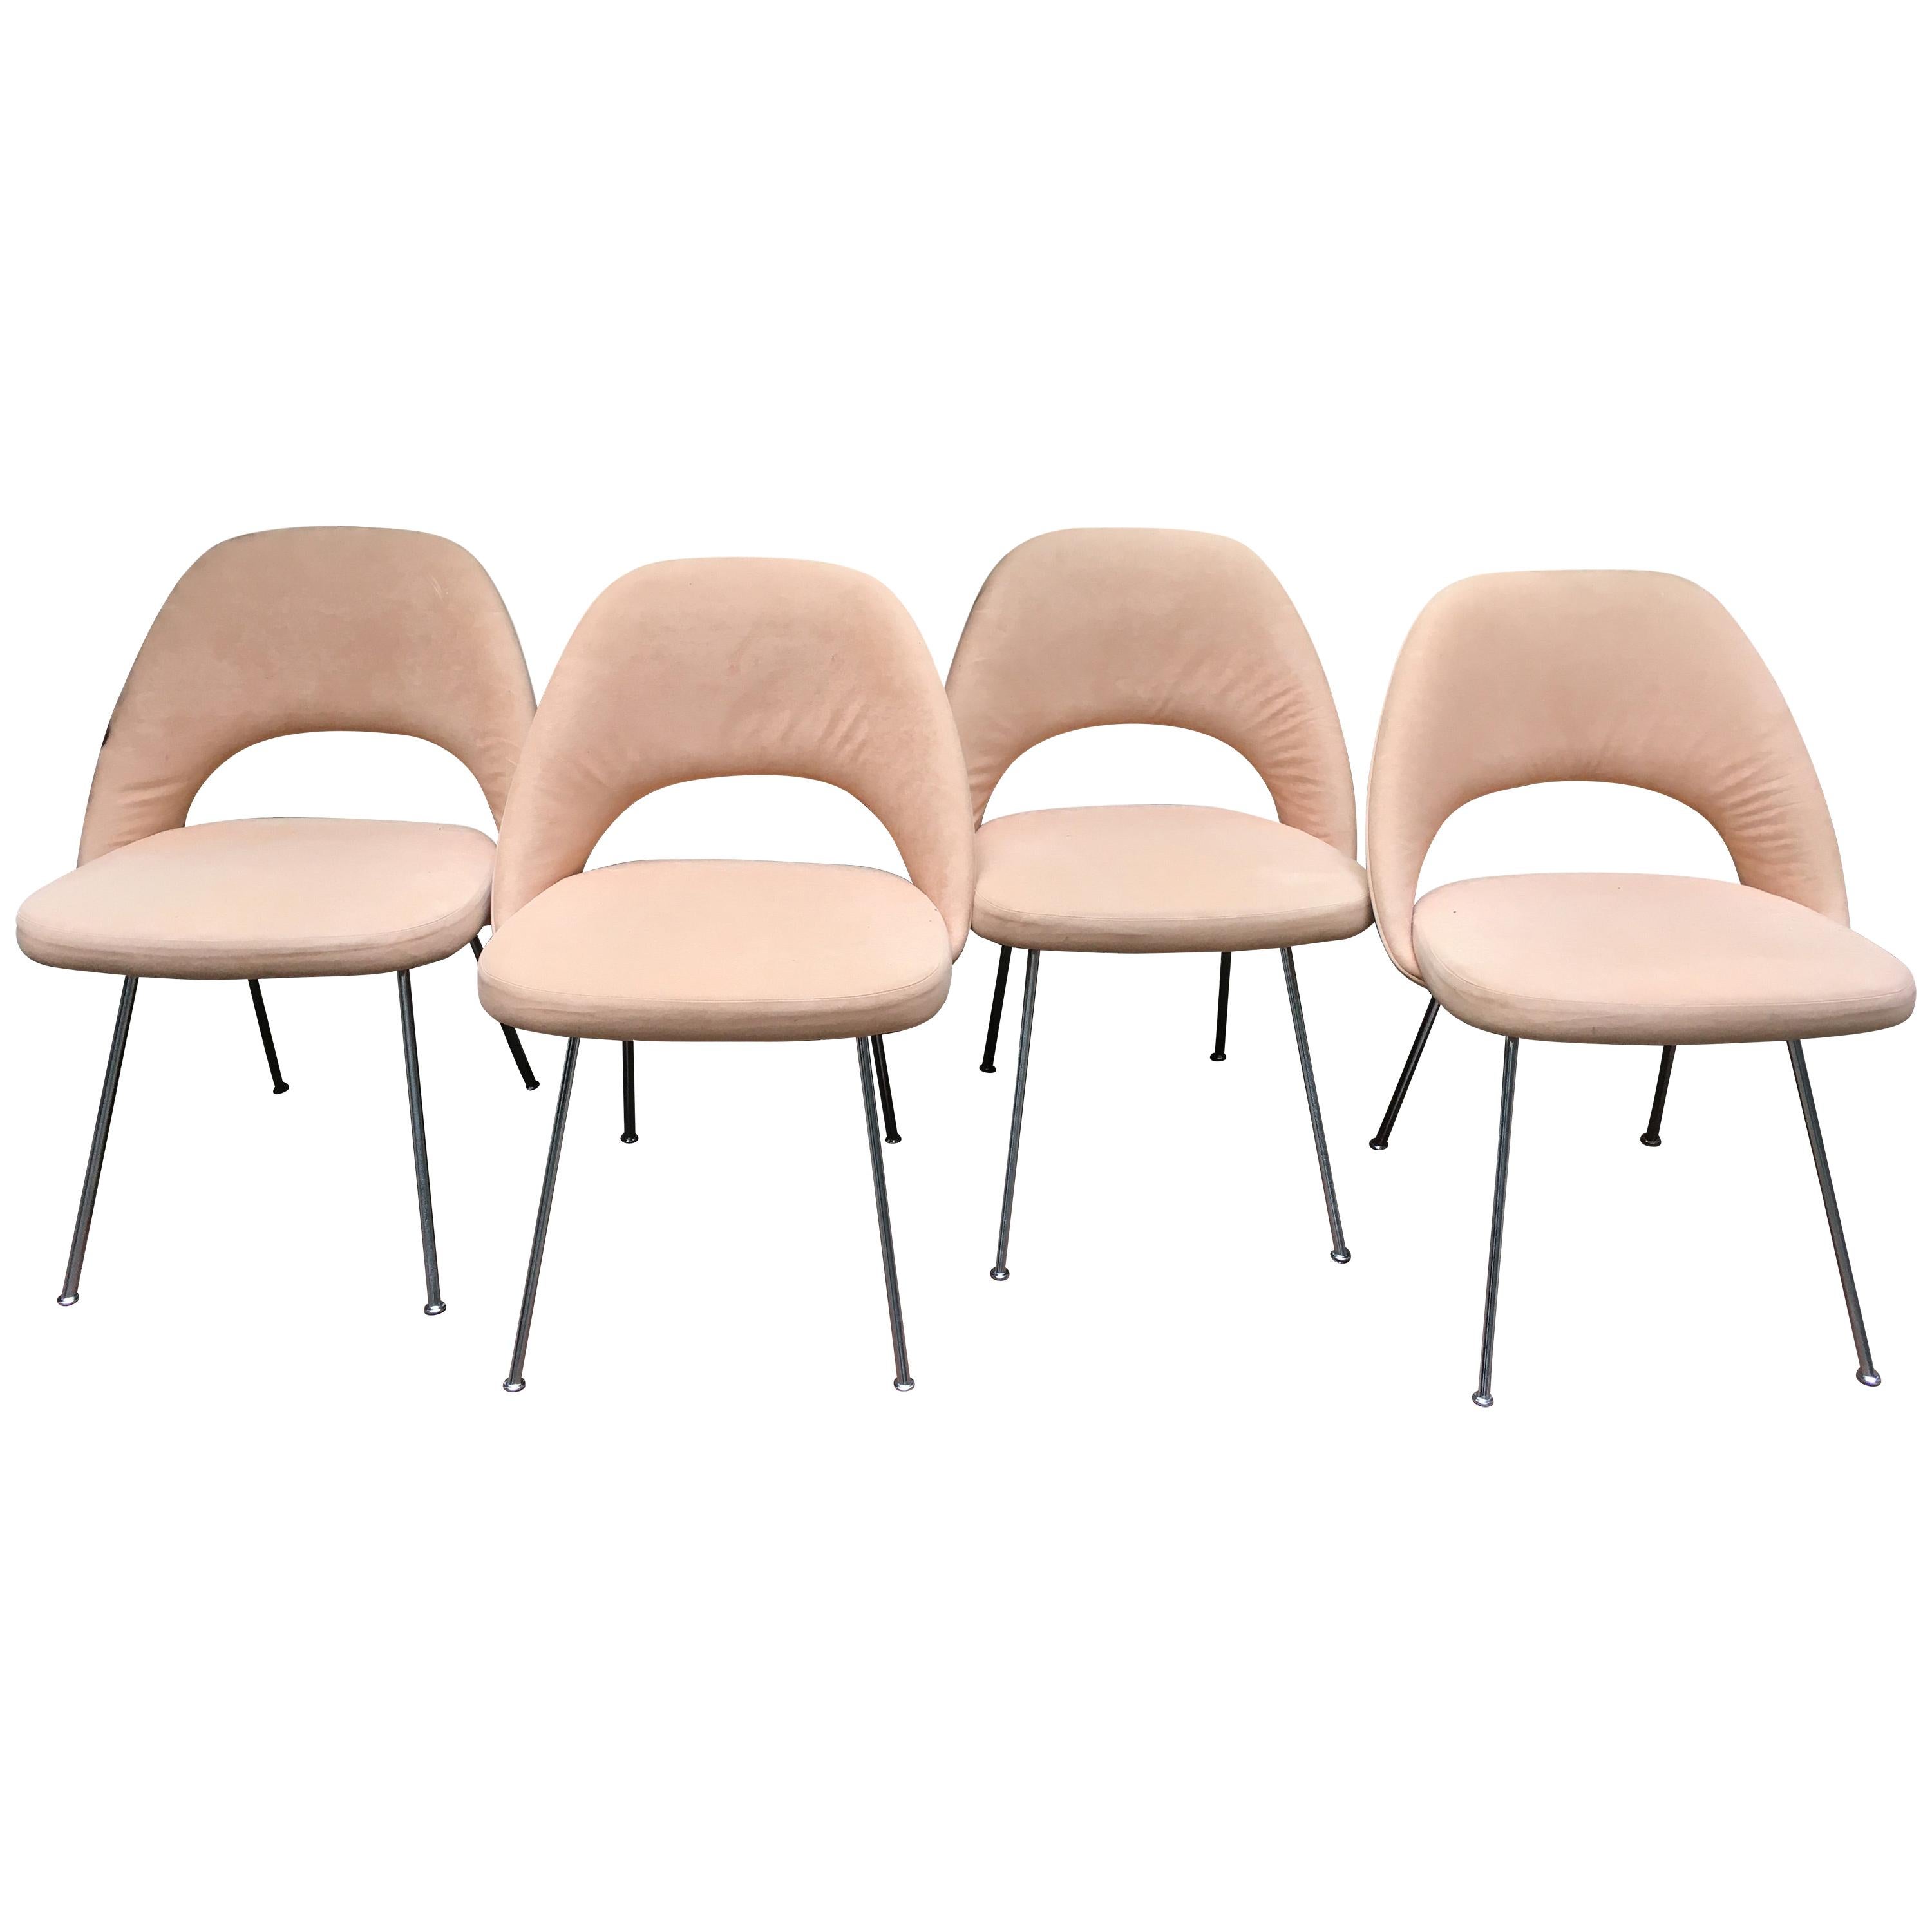 Eero Saarinen "4 Chairs Conférence Modele"